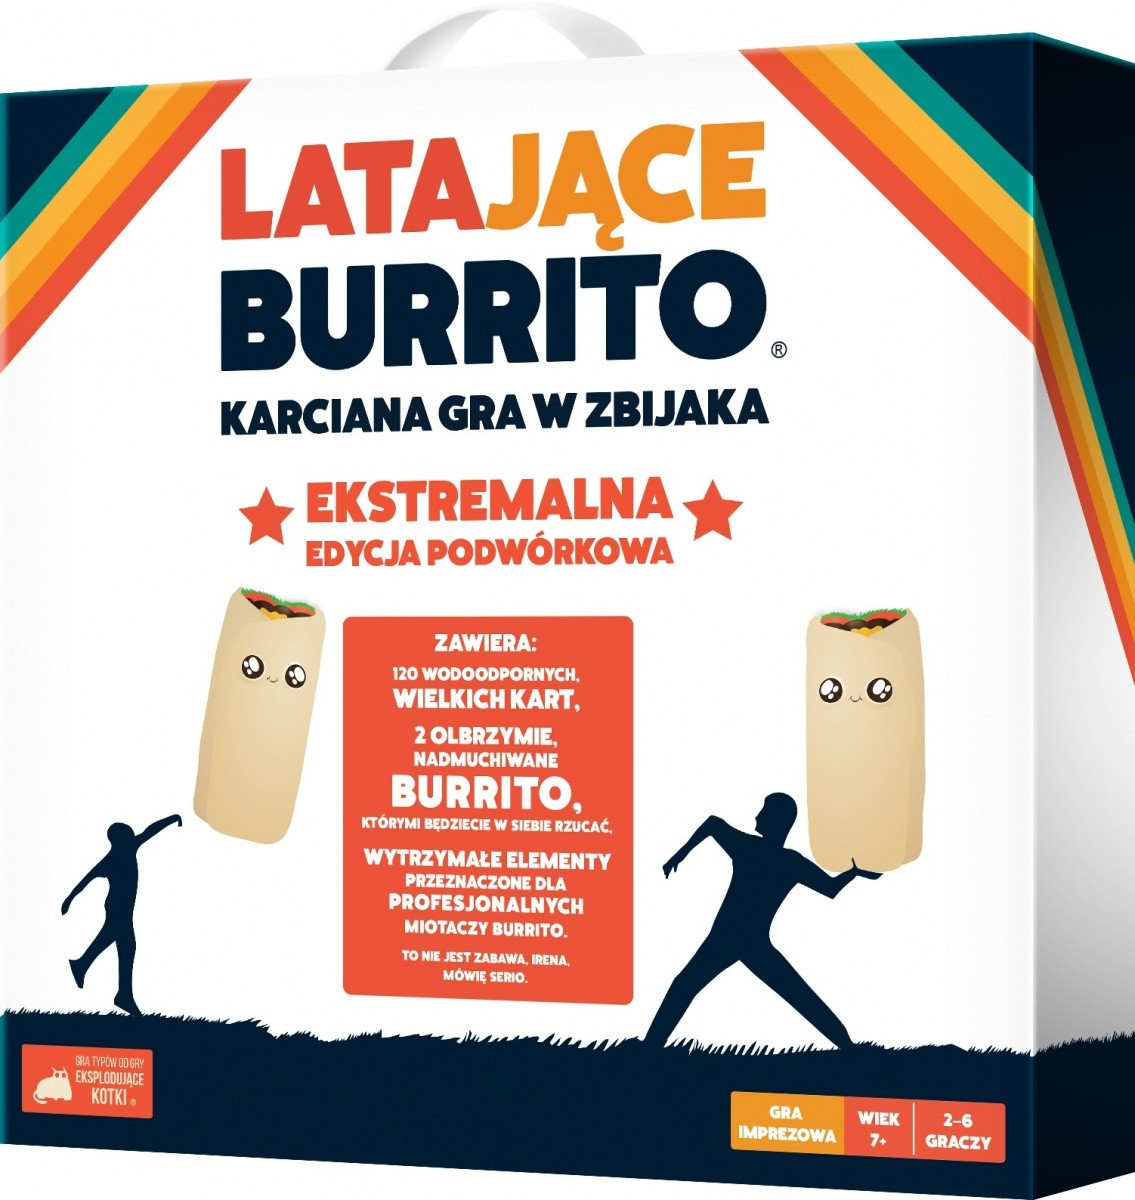 Kody rabatowe Urwis.pl - Rebel Gra karciana Latajace Burrito: Ekstremalna edycja podwórkowa